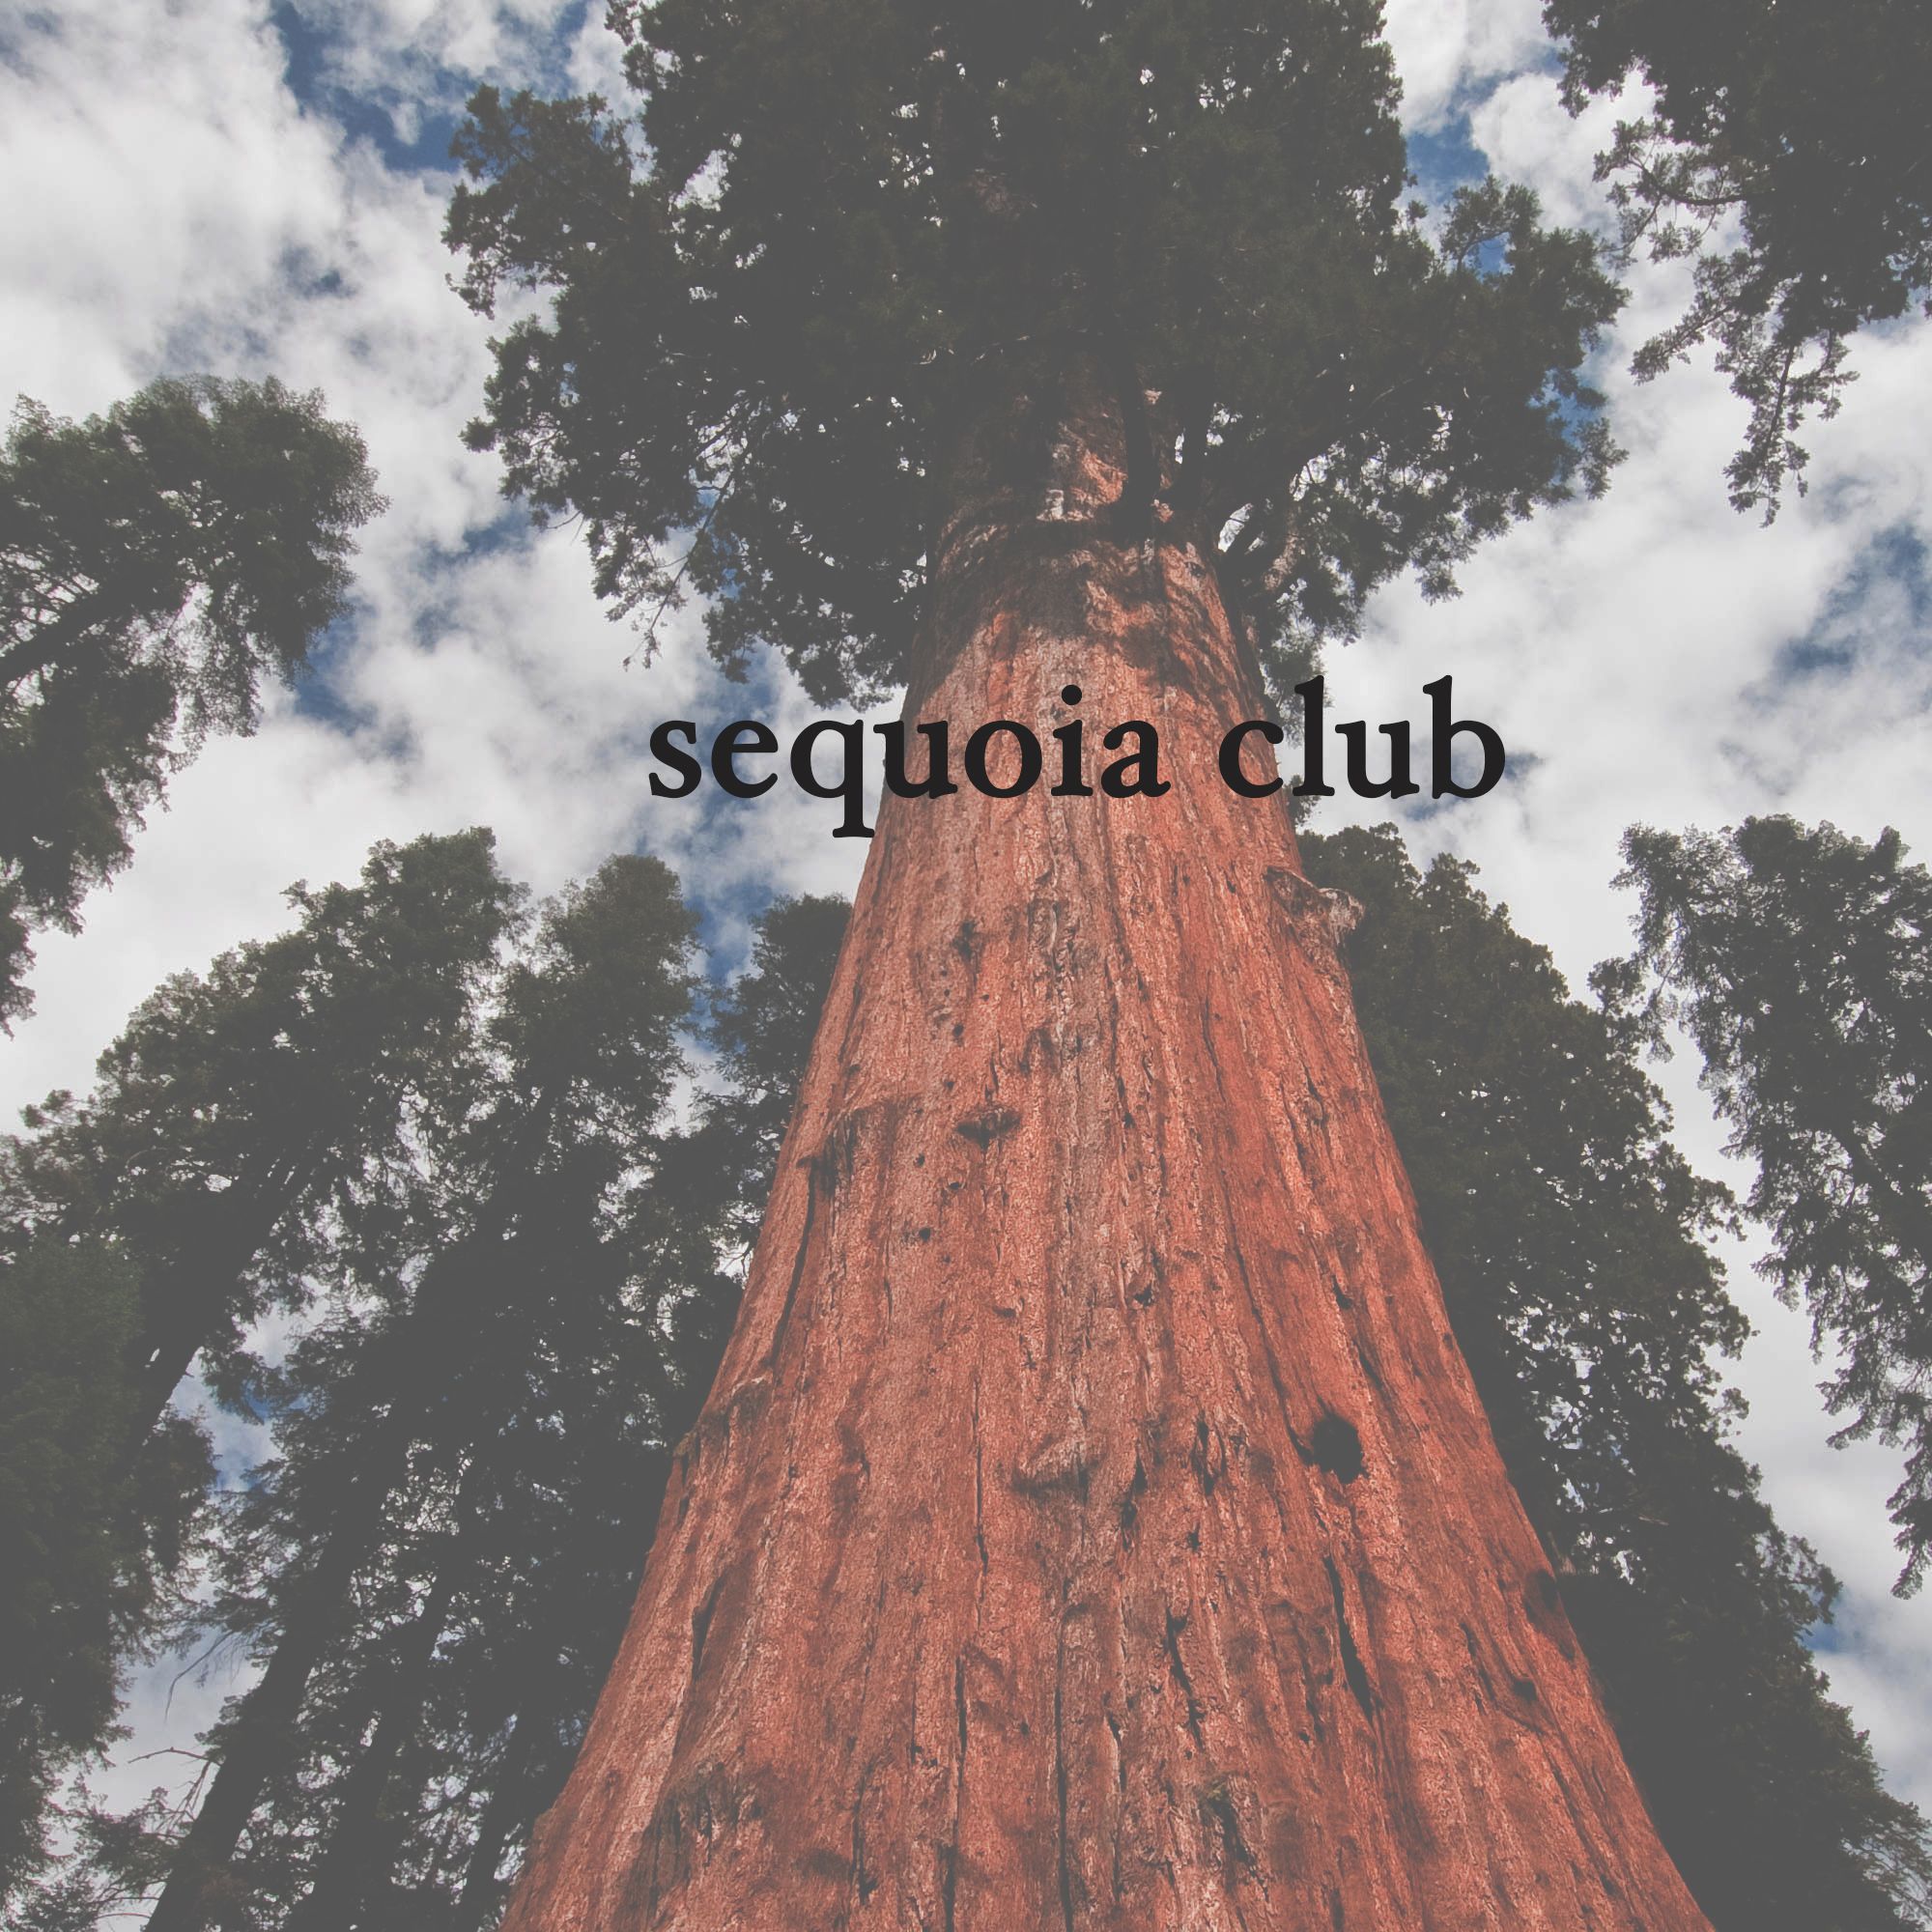 Sequoia Club